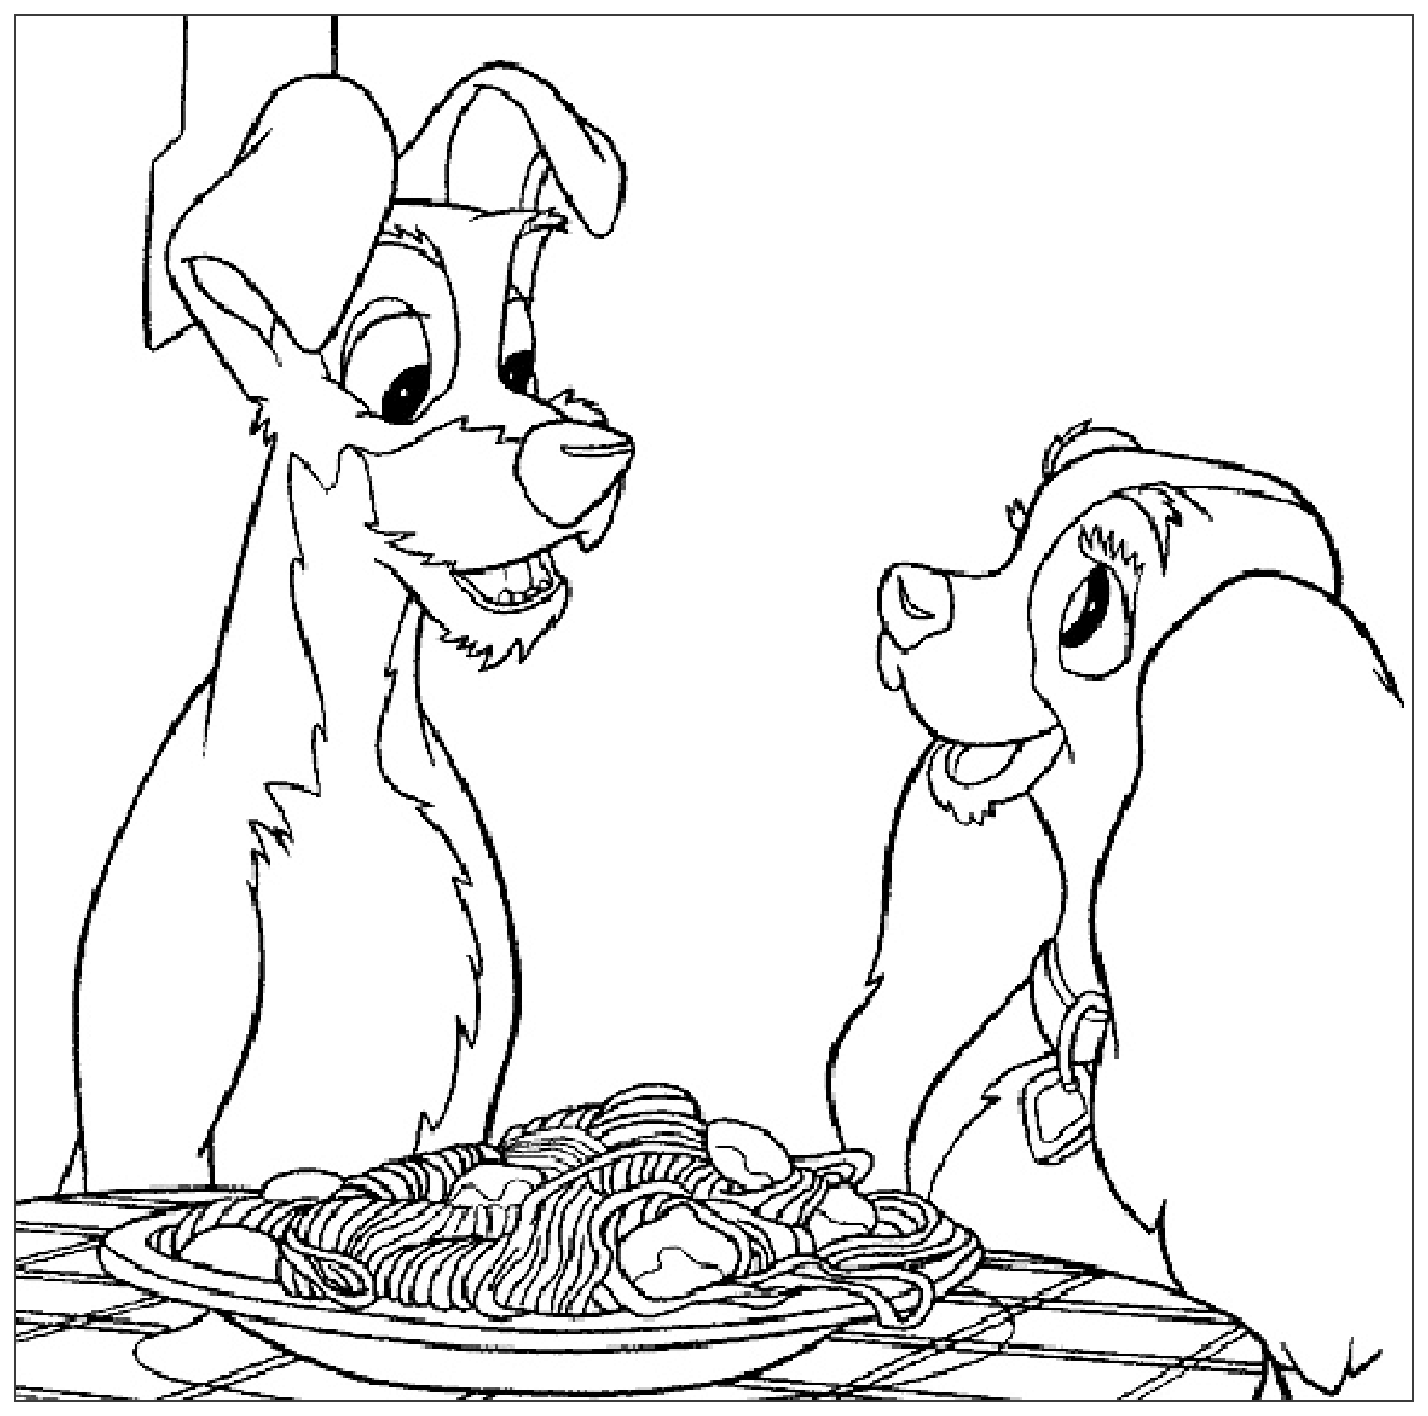 Le fameux repas ... et les spaghettis